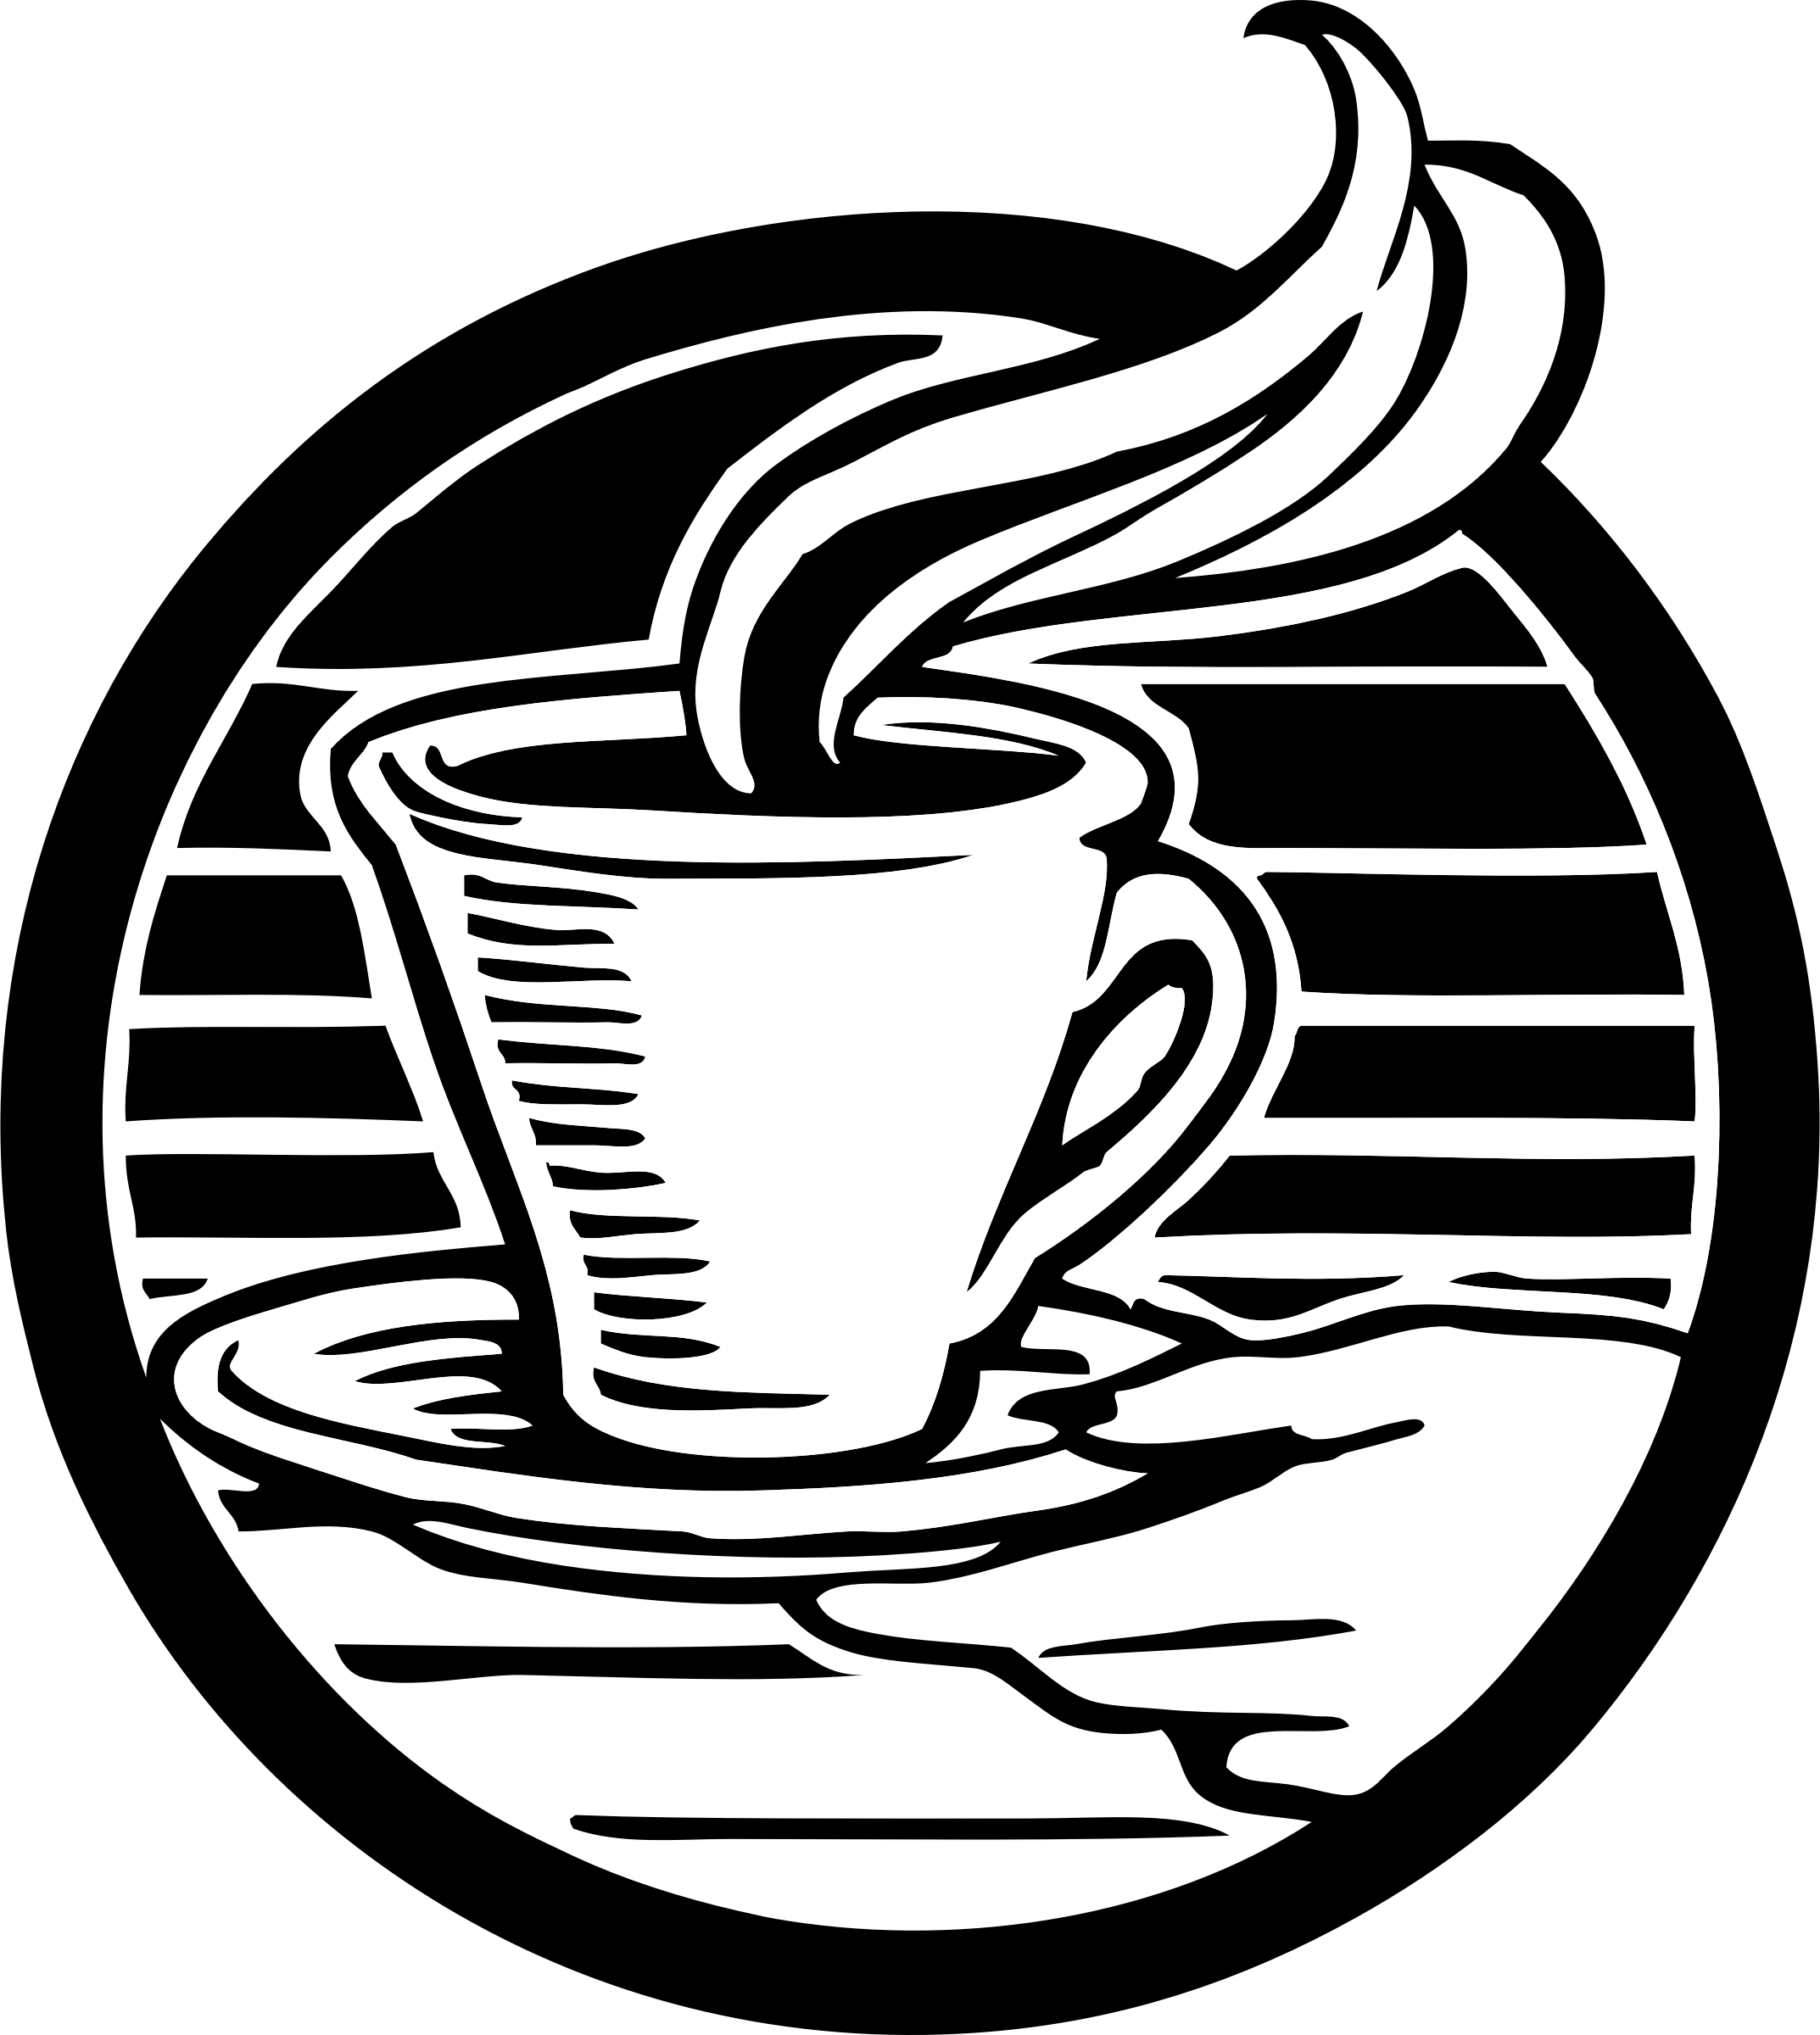 coffee clipart design